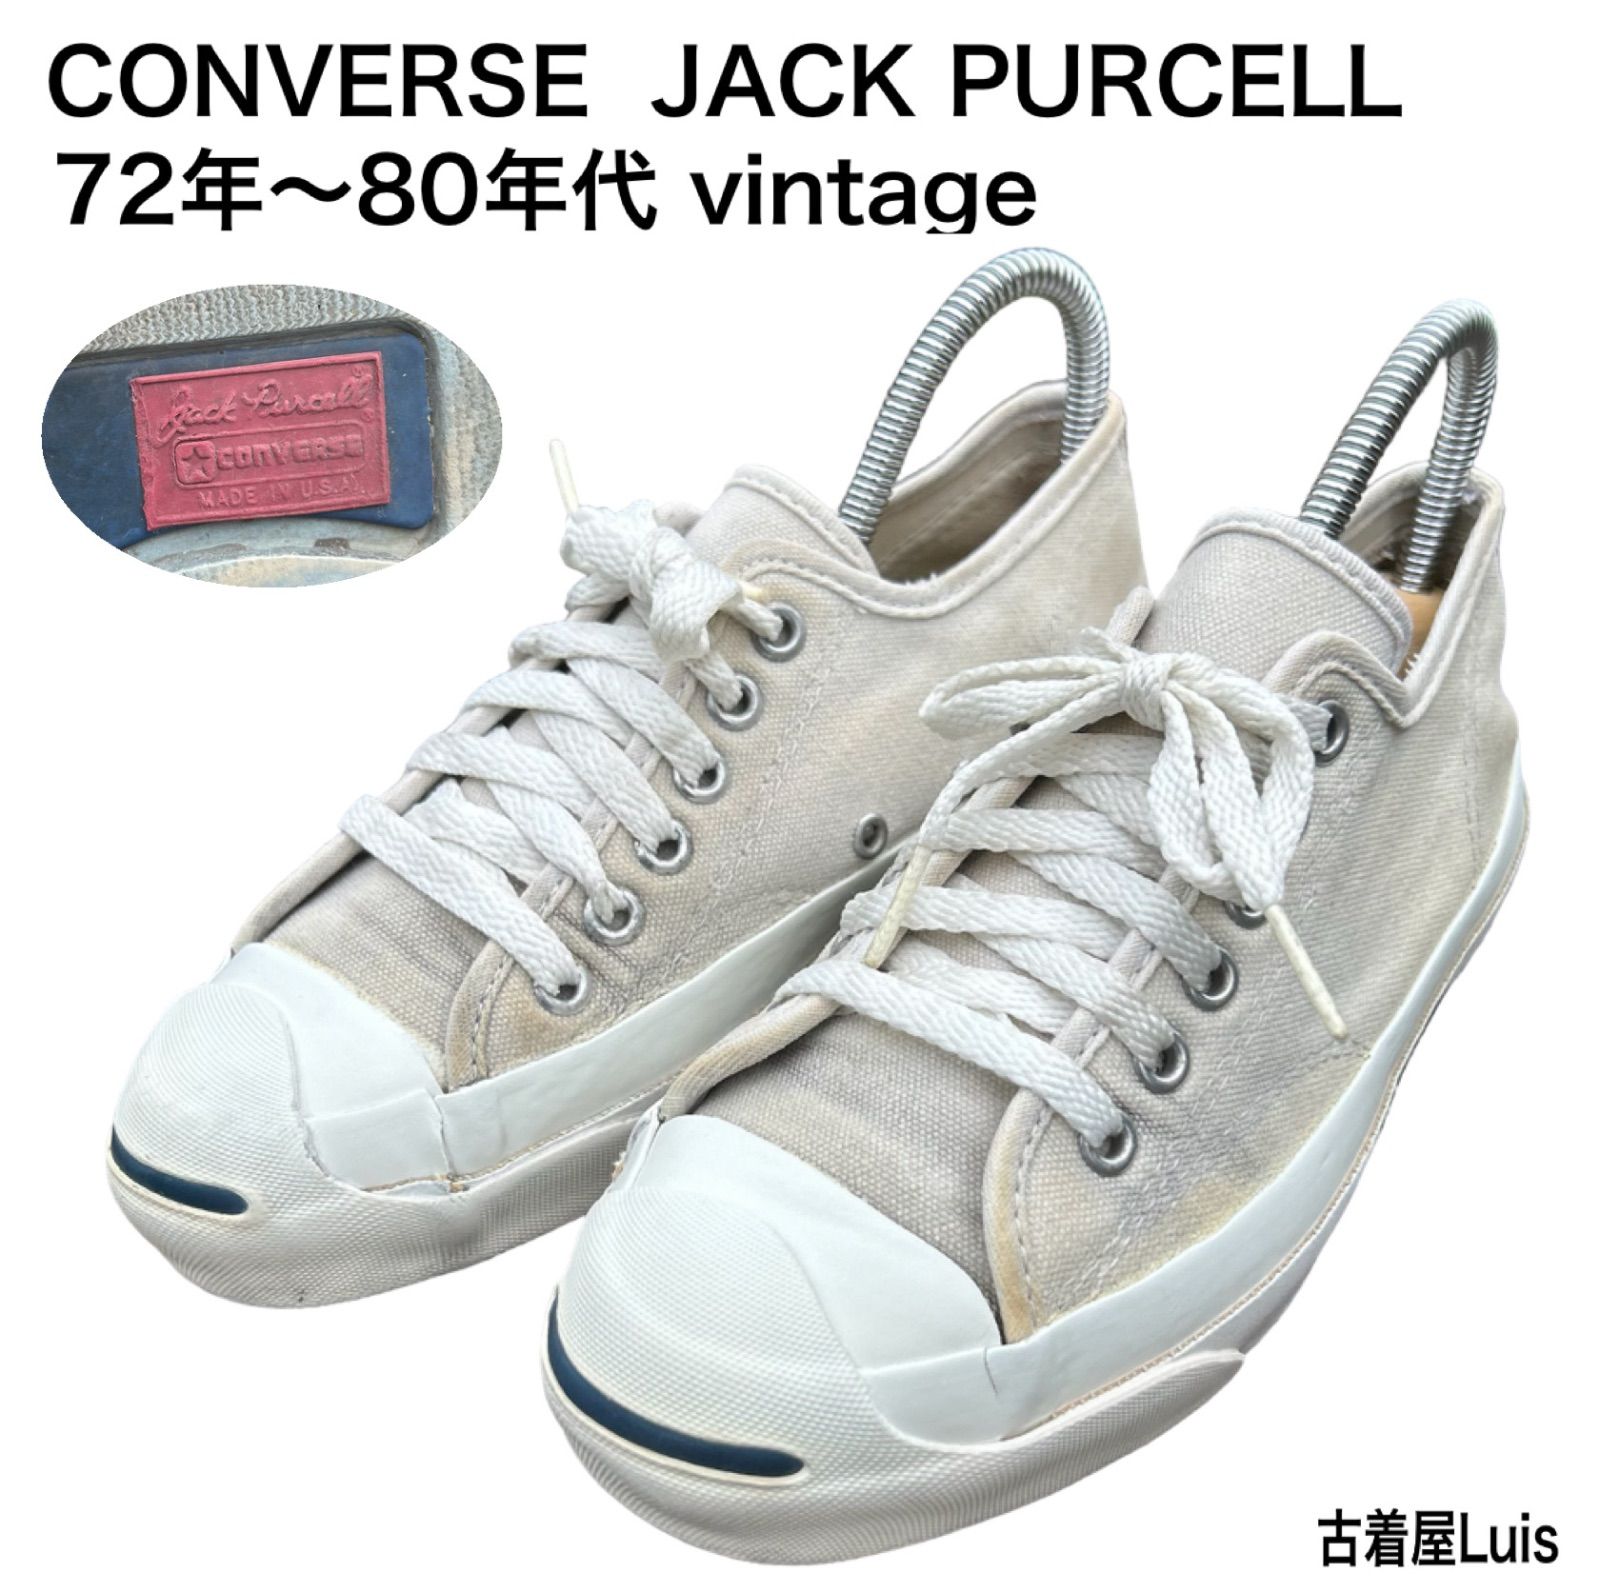 稀少 70s vintage USA製 コンバース JACK PURCELL ジャックパーセル ホワイト ELTRA社 ヴィンテージ品